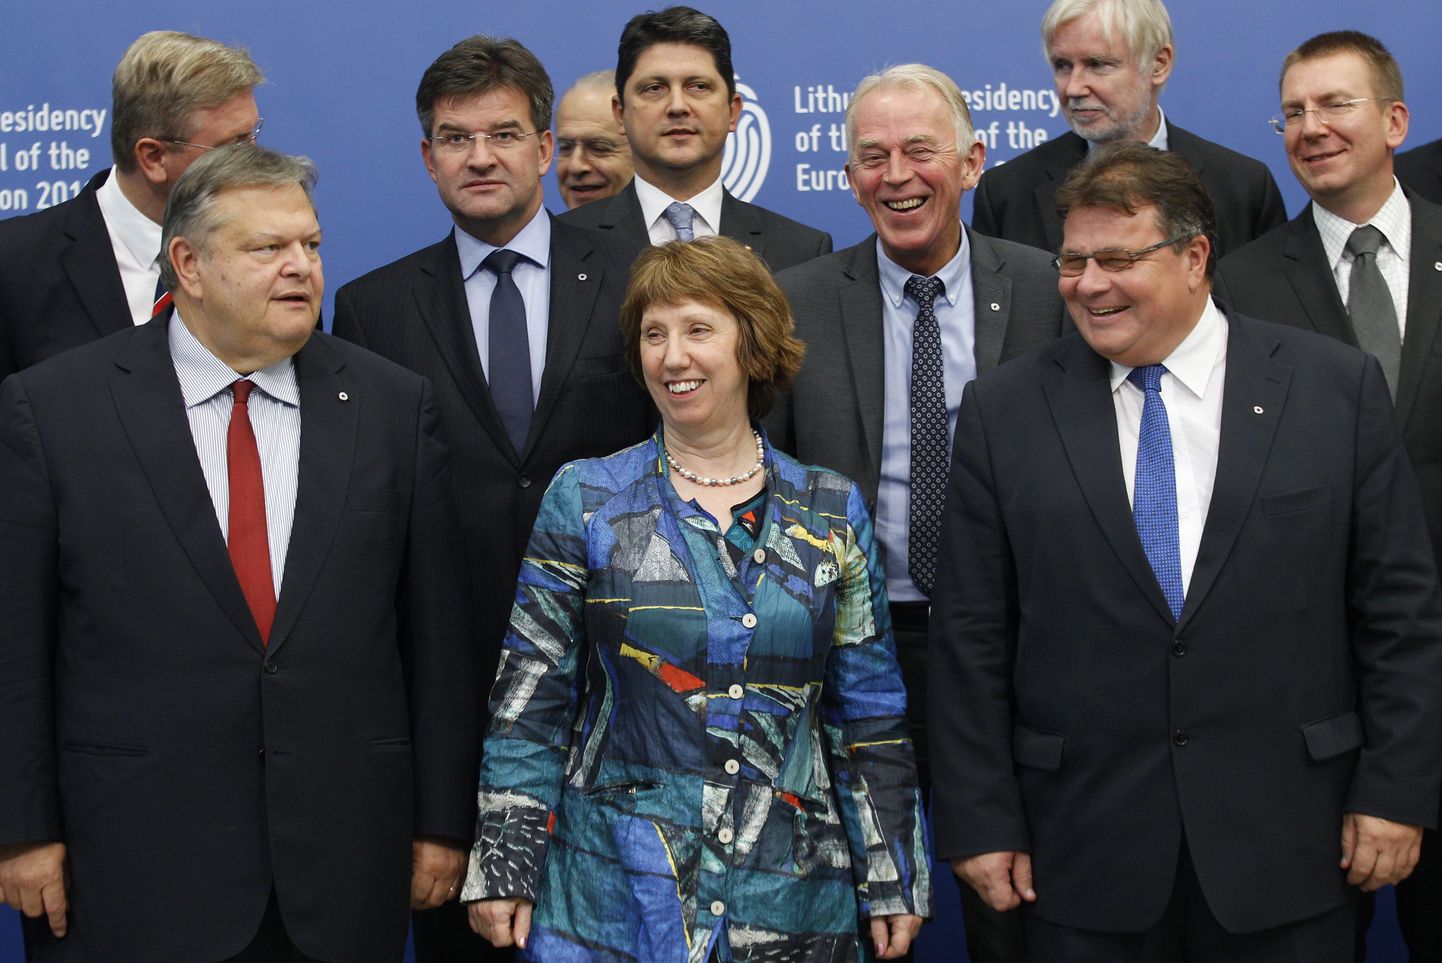 Euroopa Liidu välispoliitika juht Catherine Ashton (ees keskel), Leedu välisminister Linas Linkevicius (paremal) ja Kreeka asepeaminister Evangelos Venizelos (vasakul) täna Vilniuses.